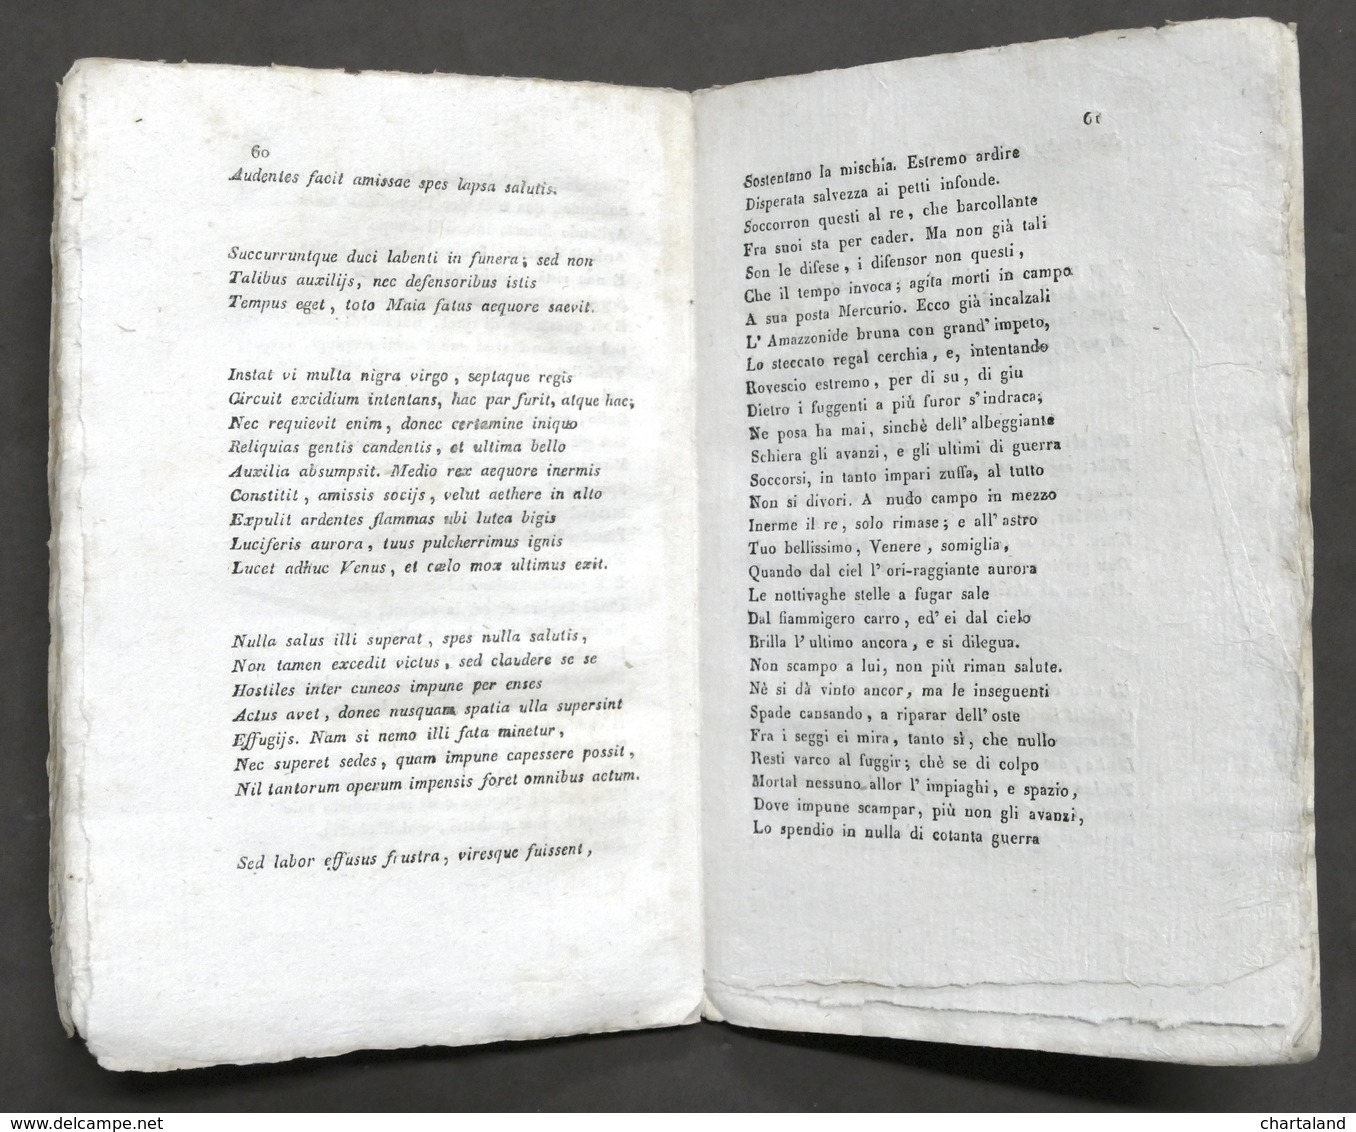 Poesia - Vida - La Scacchiade Ovvero Il Giuoco Degli Scacchi - 1^ Ed. 1829 - Unclassified